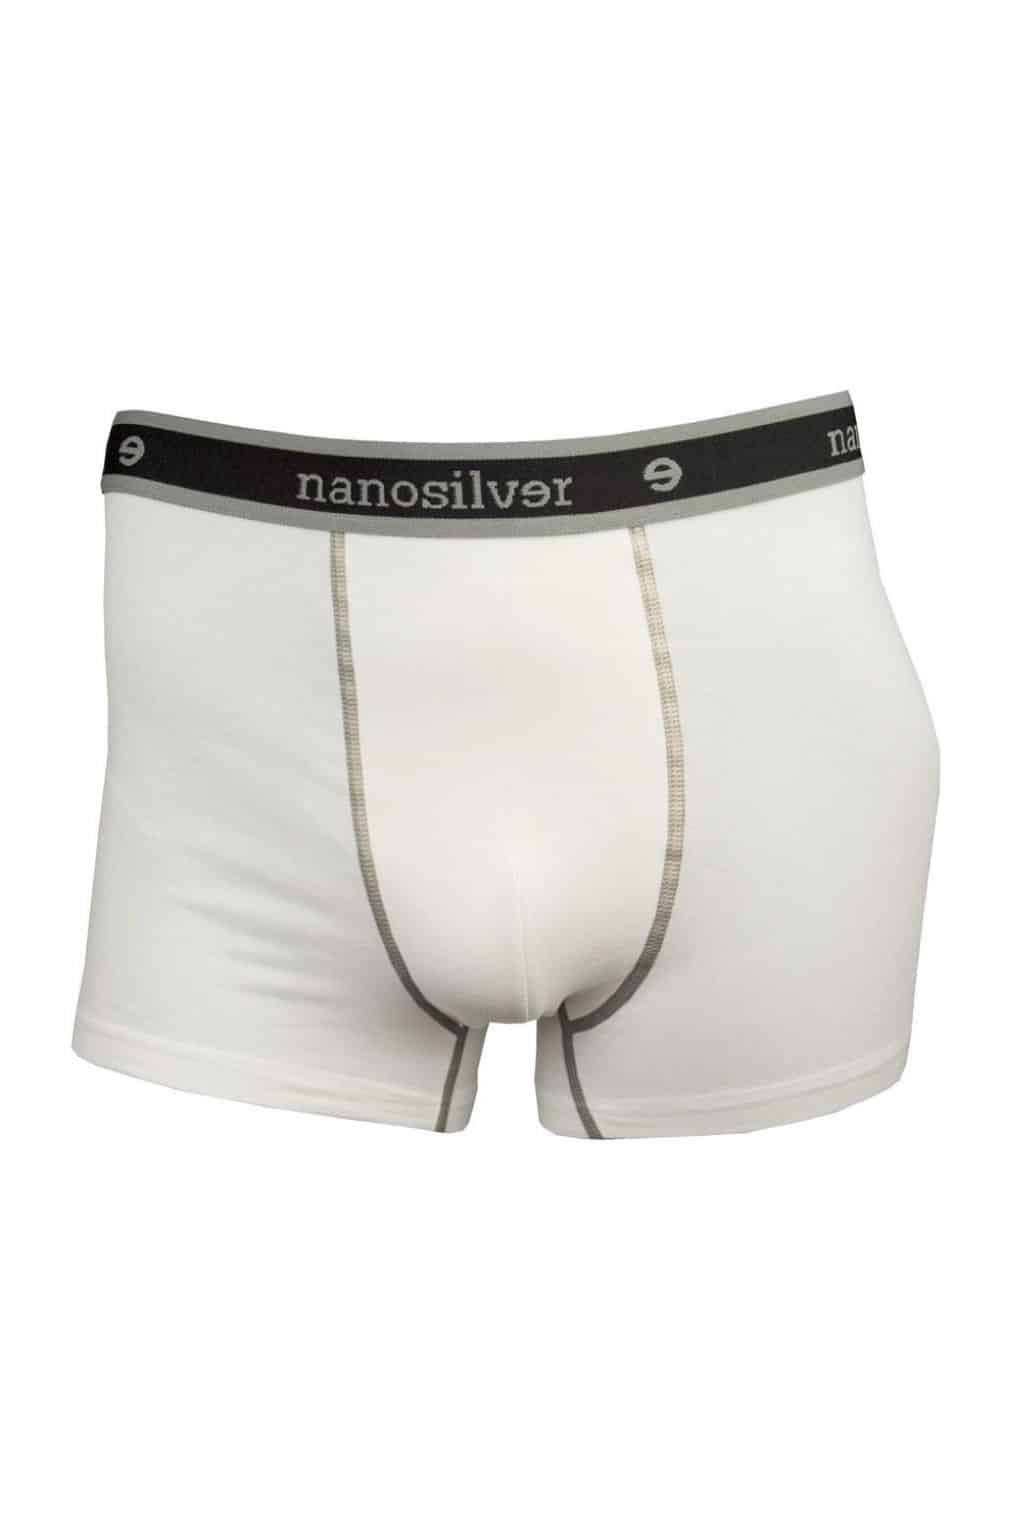 nanosilver® Nano boxerky s gumou nanosilver bez zadního švu bílé Velikost: XXL